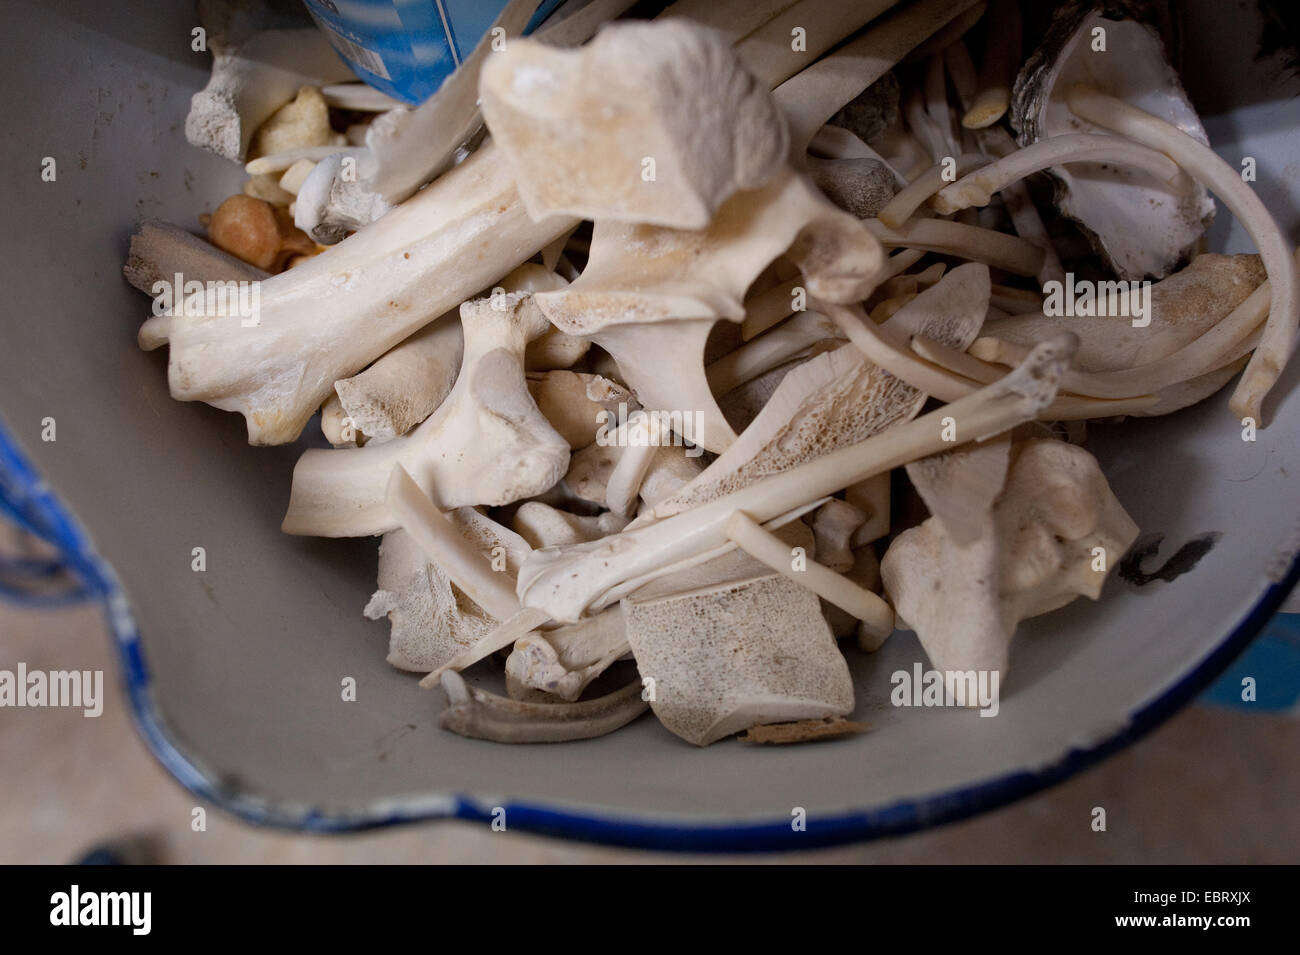 Una ciotola con le ossa di animali nell'atelier dell'artista Iris Schieferstein. Foto Stock